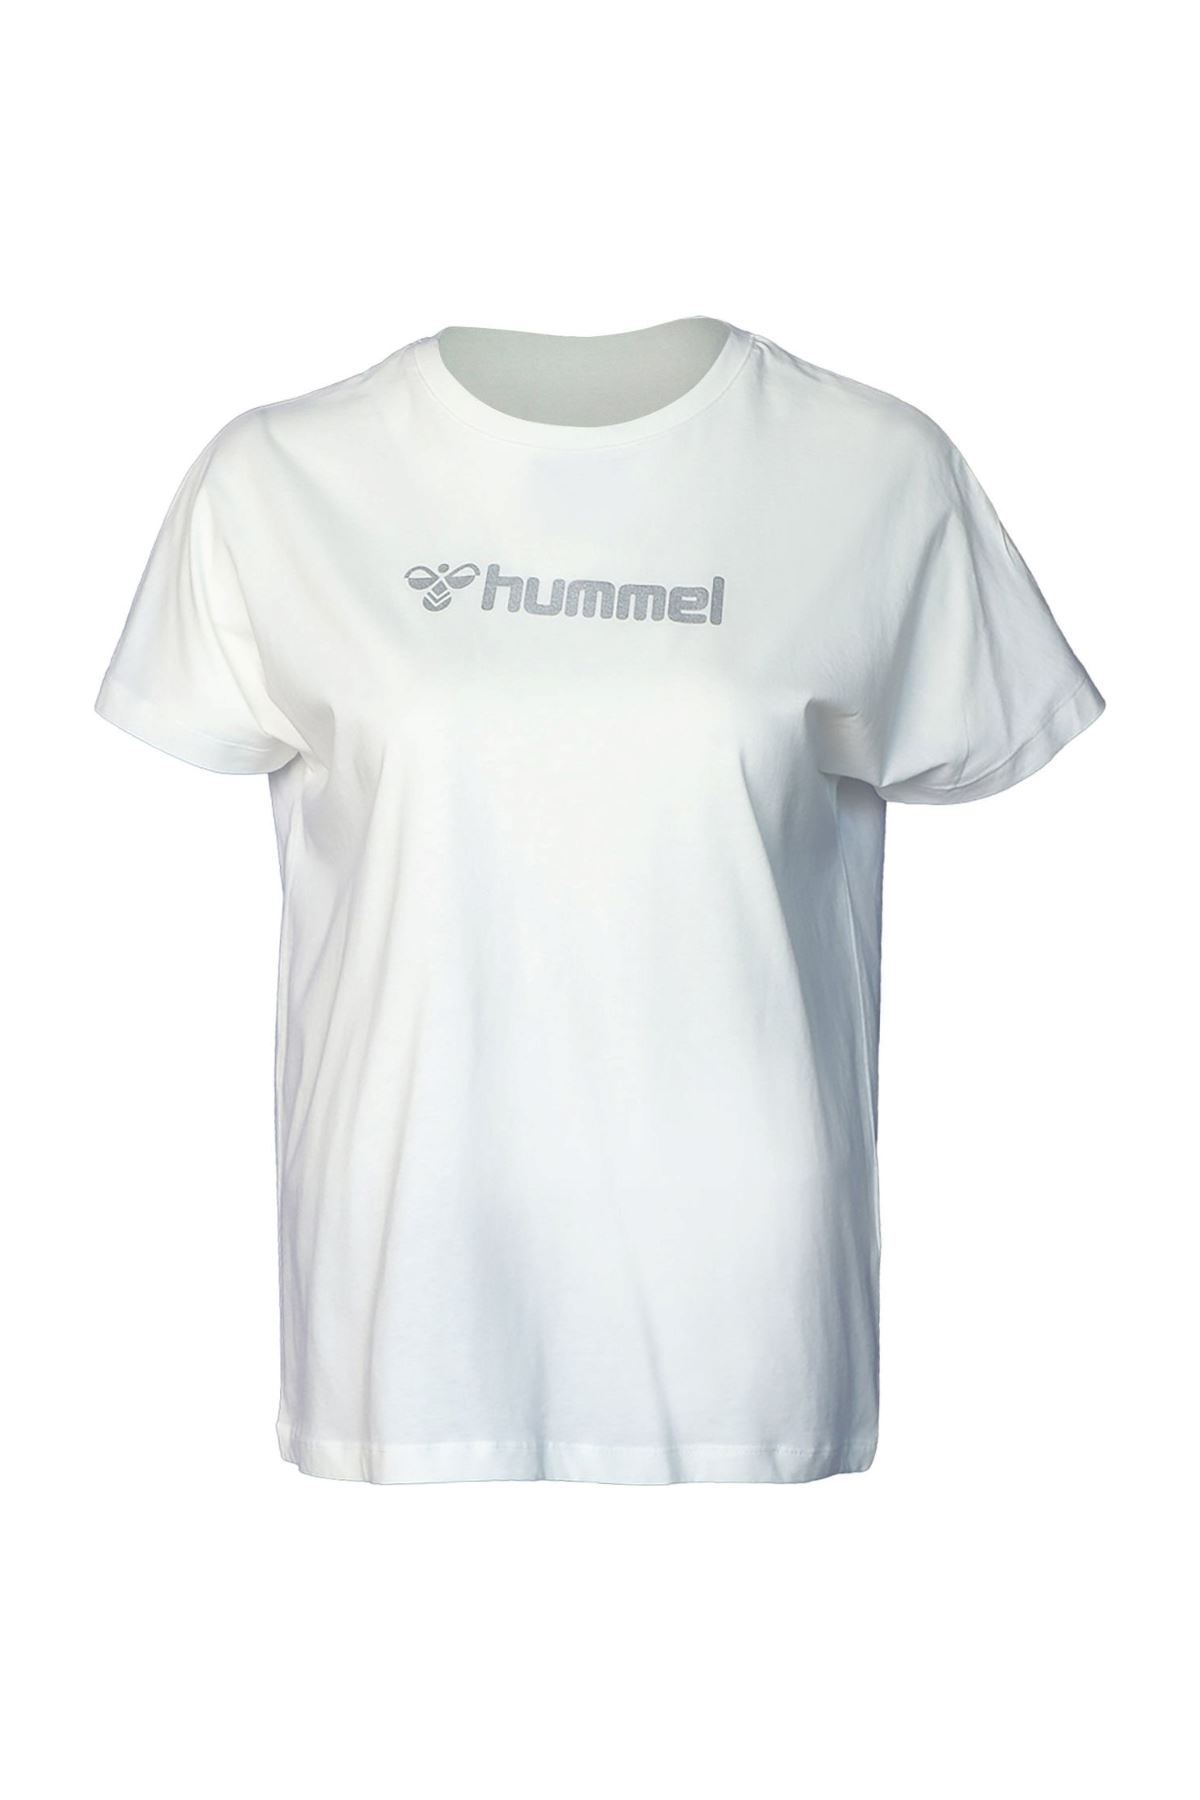 Hummel Hmlarwıd Kadın Beyaz Tişört - 911636-9003